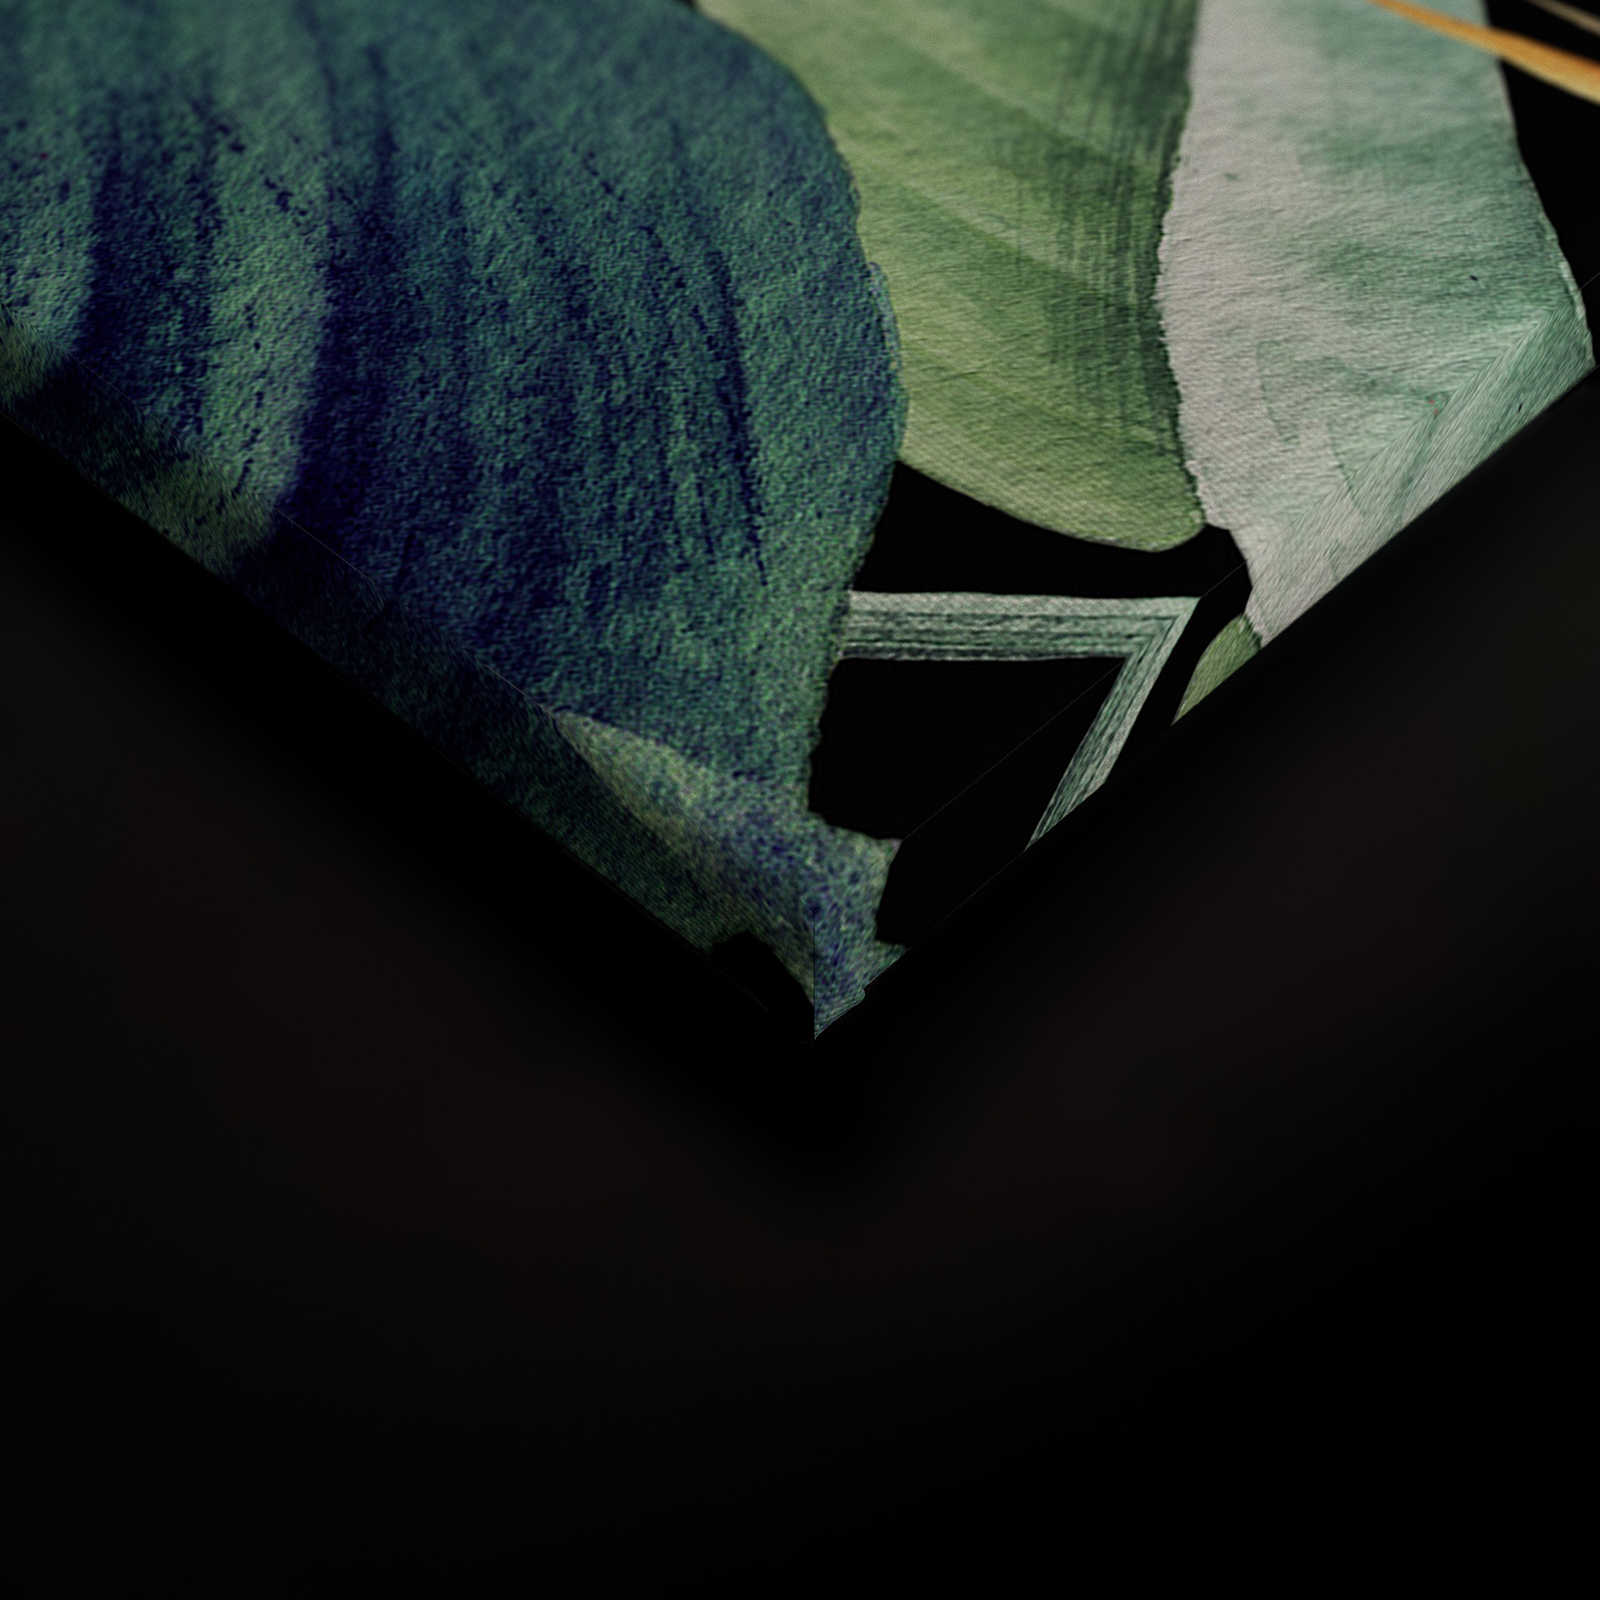             Toile motif jungle avec feuilles peintes - 0,90 m x 0,60 m
        